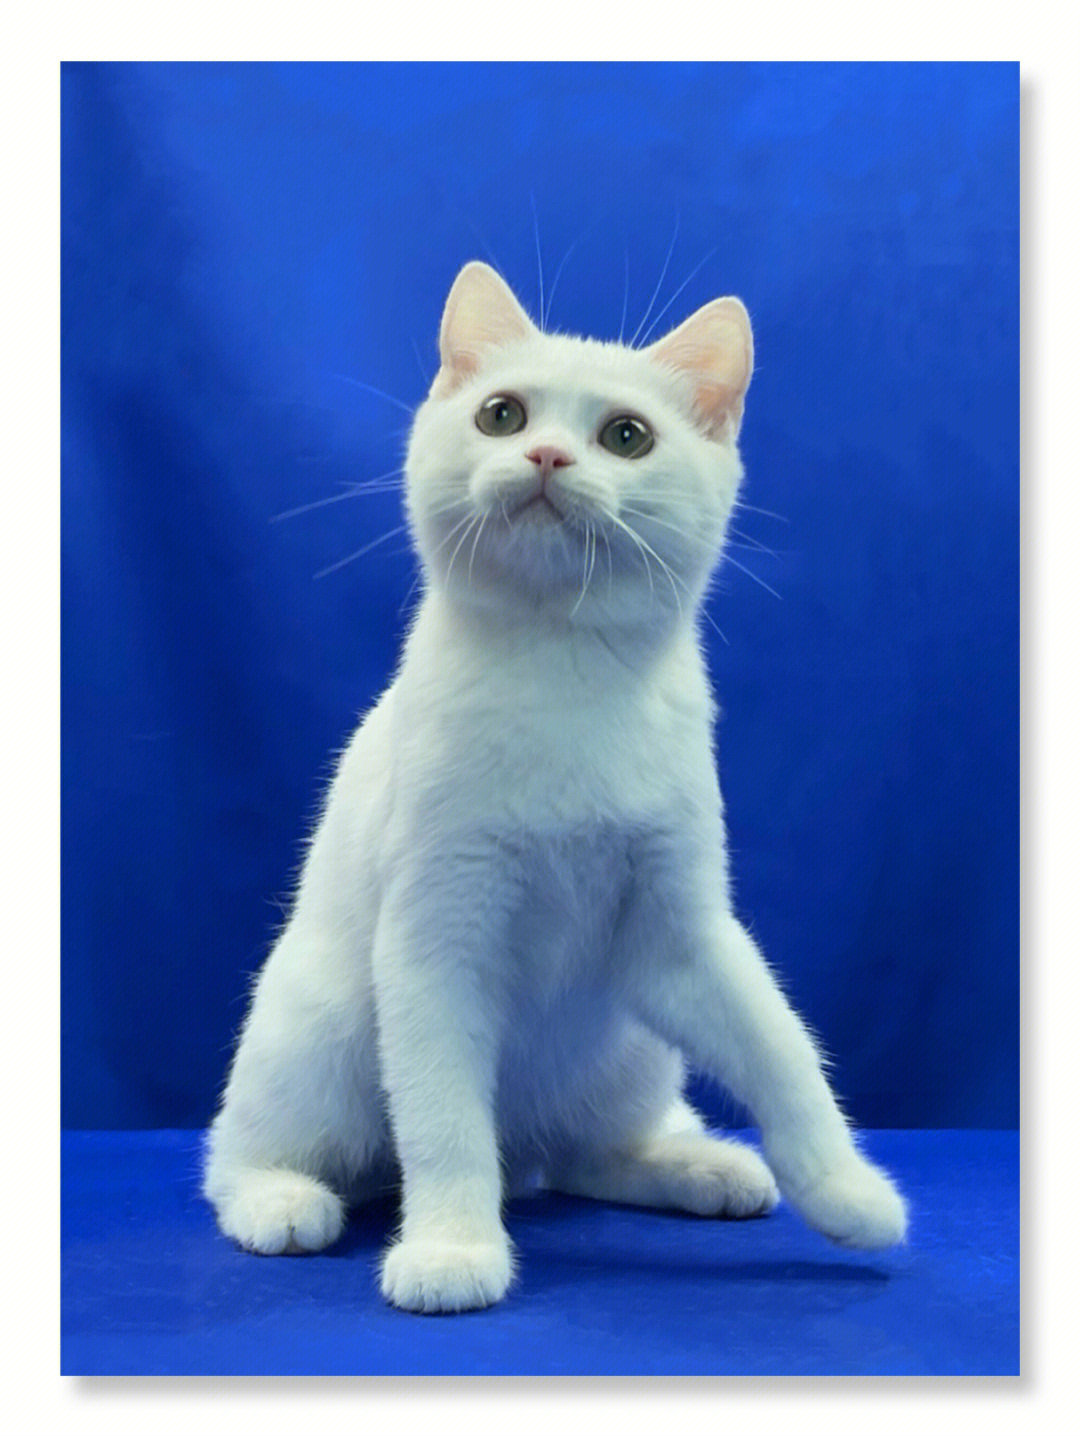 98小猫信息如下品种:英短颜色:纯白性别:弟弟年龄:3个月体重:2